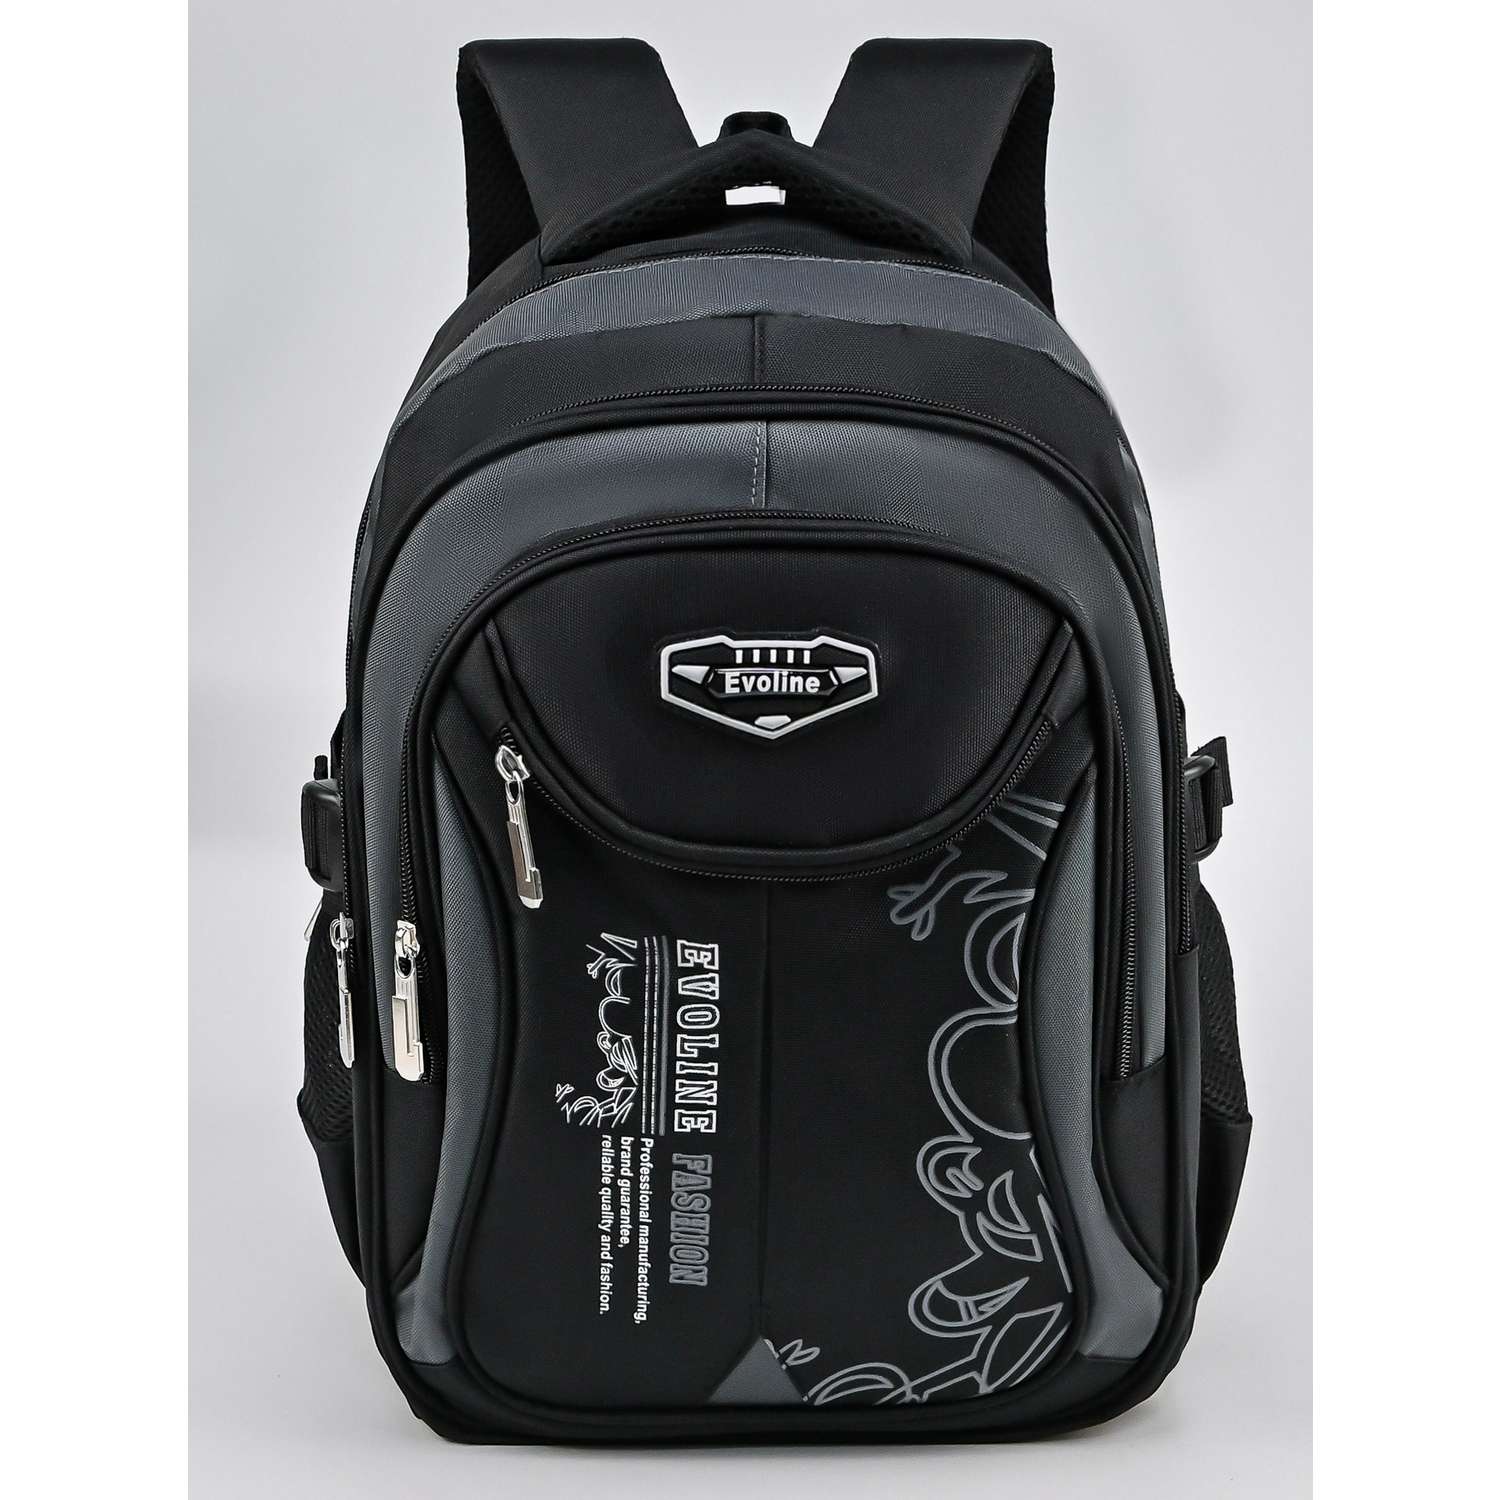 Рюкзак школьный Evoline средний черно-серый - фото 1